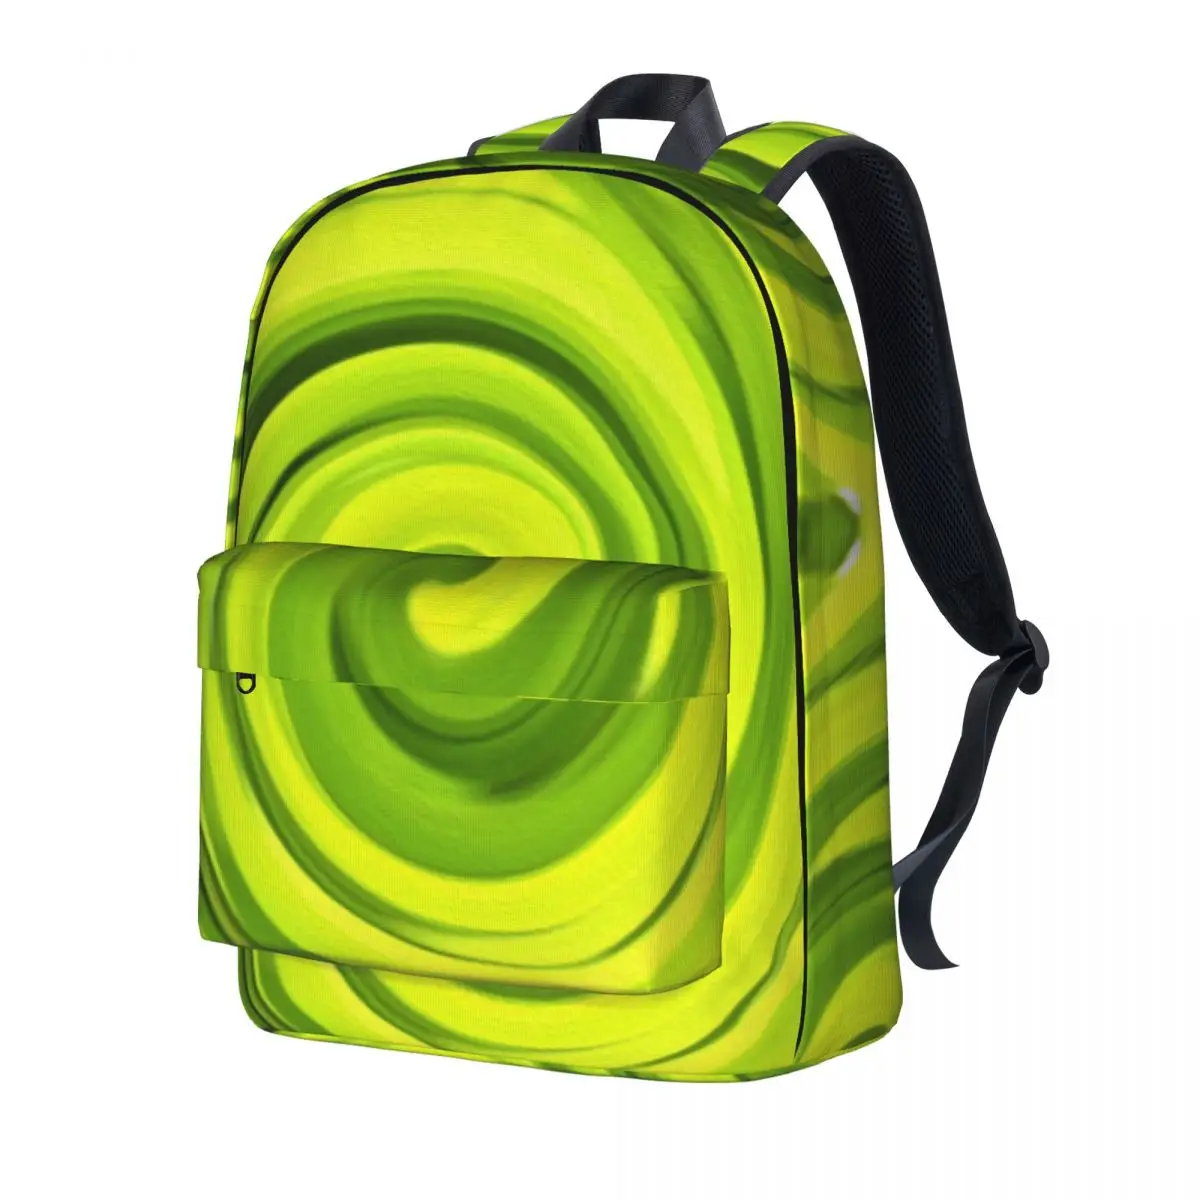 

Зеленый жидкий художественный рюкзак Groovy, абстрактный вихревой ежедневный рюкзак, студенческие модные ранцы для старшей школы, дизайнерск...